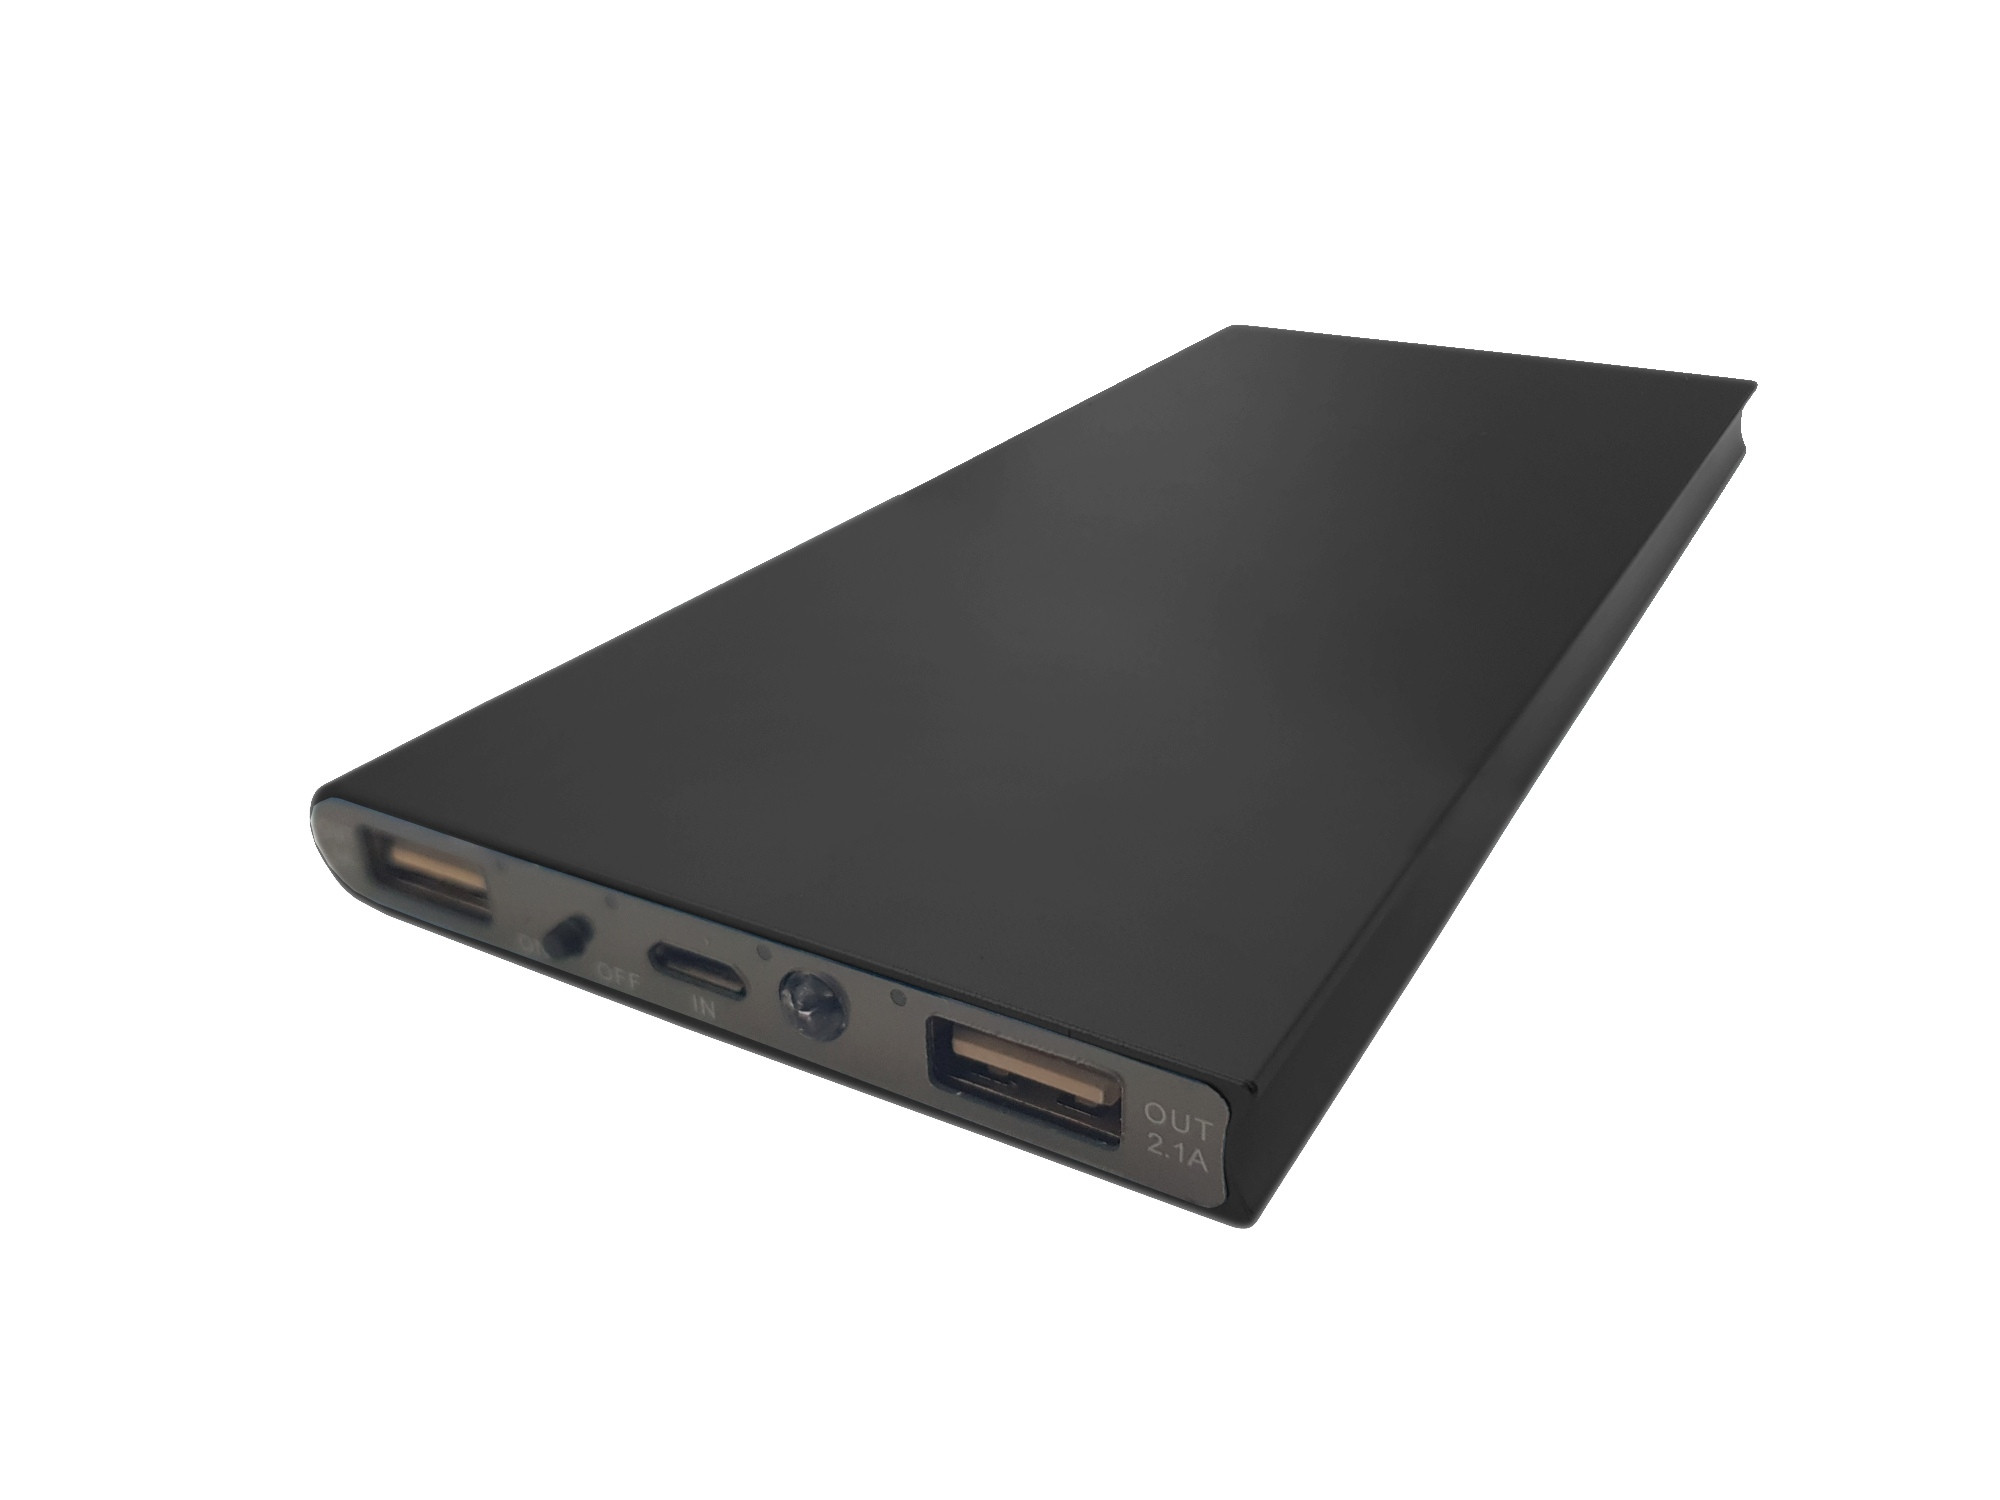 Obudowa powerbank Li-Poly 153x75mm czarna (USB 5V 1A oraz 5V 2.1A)